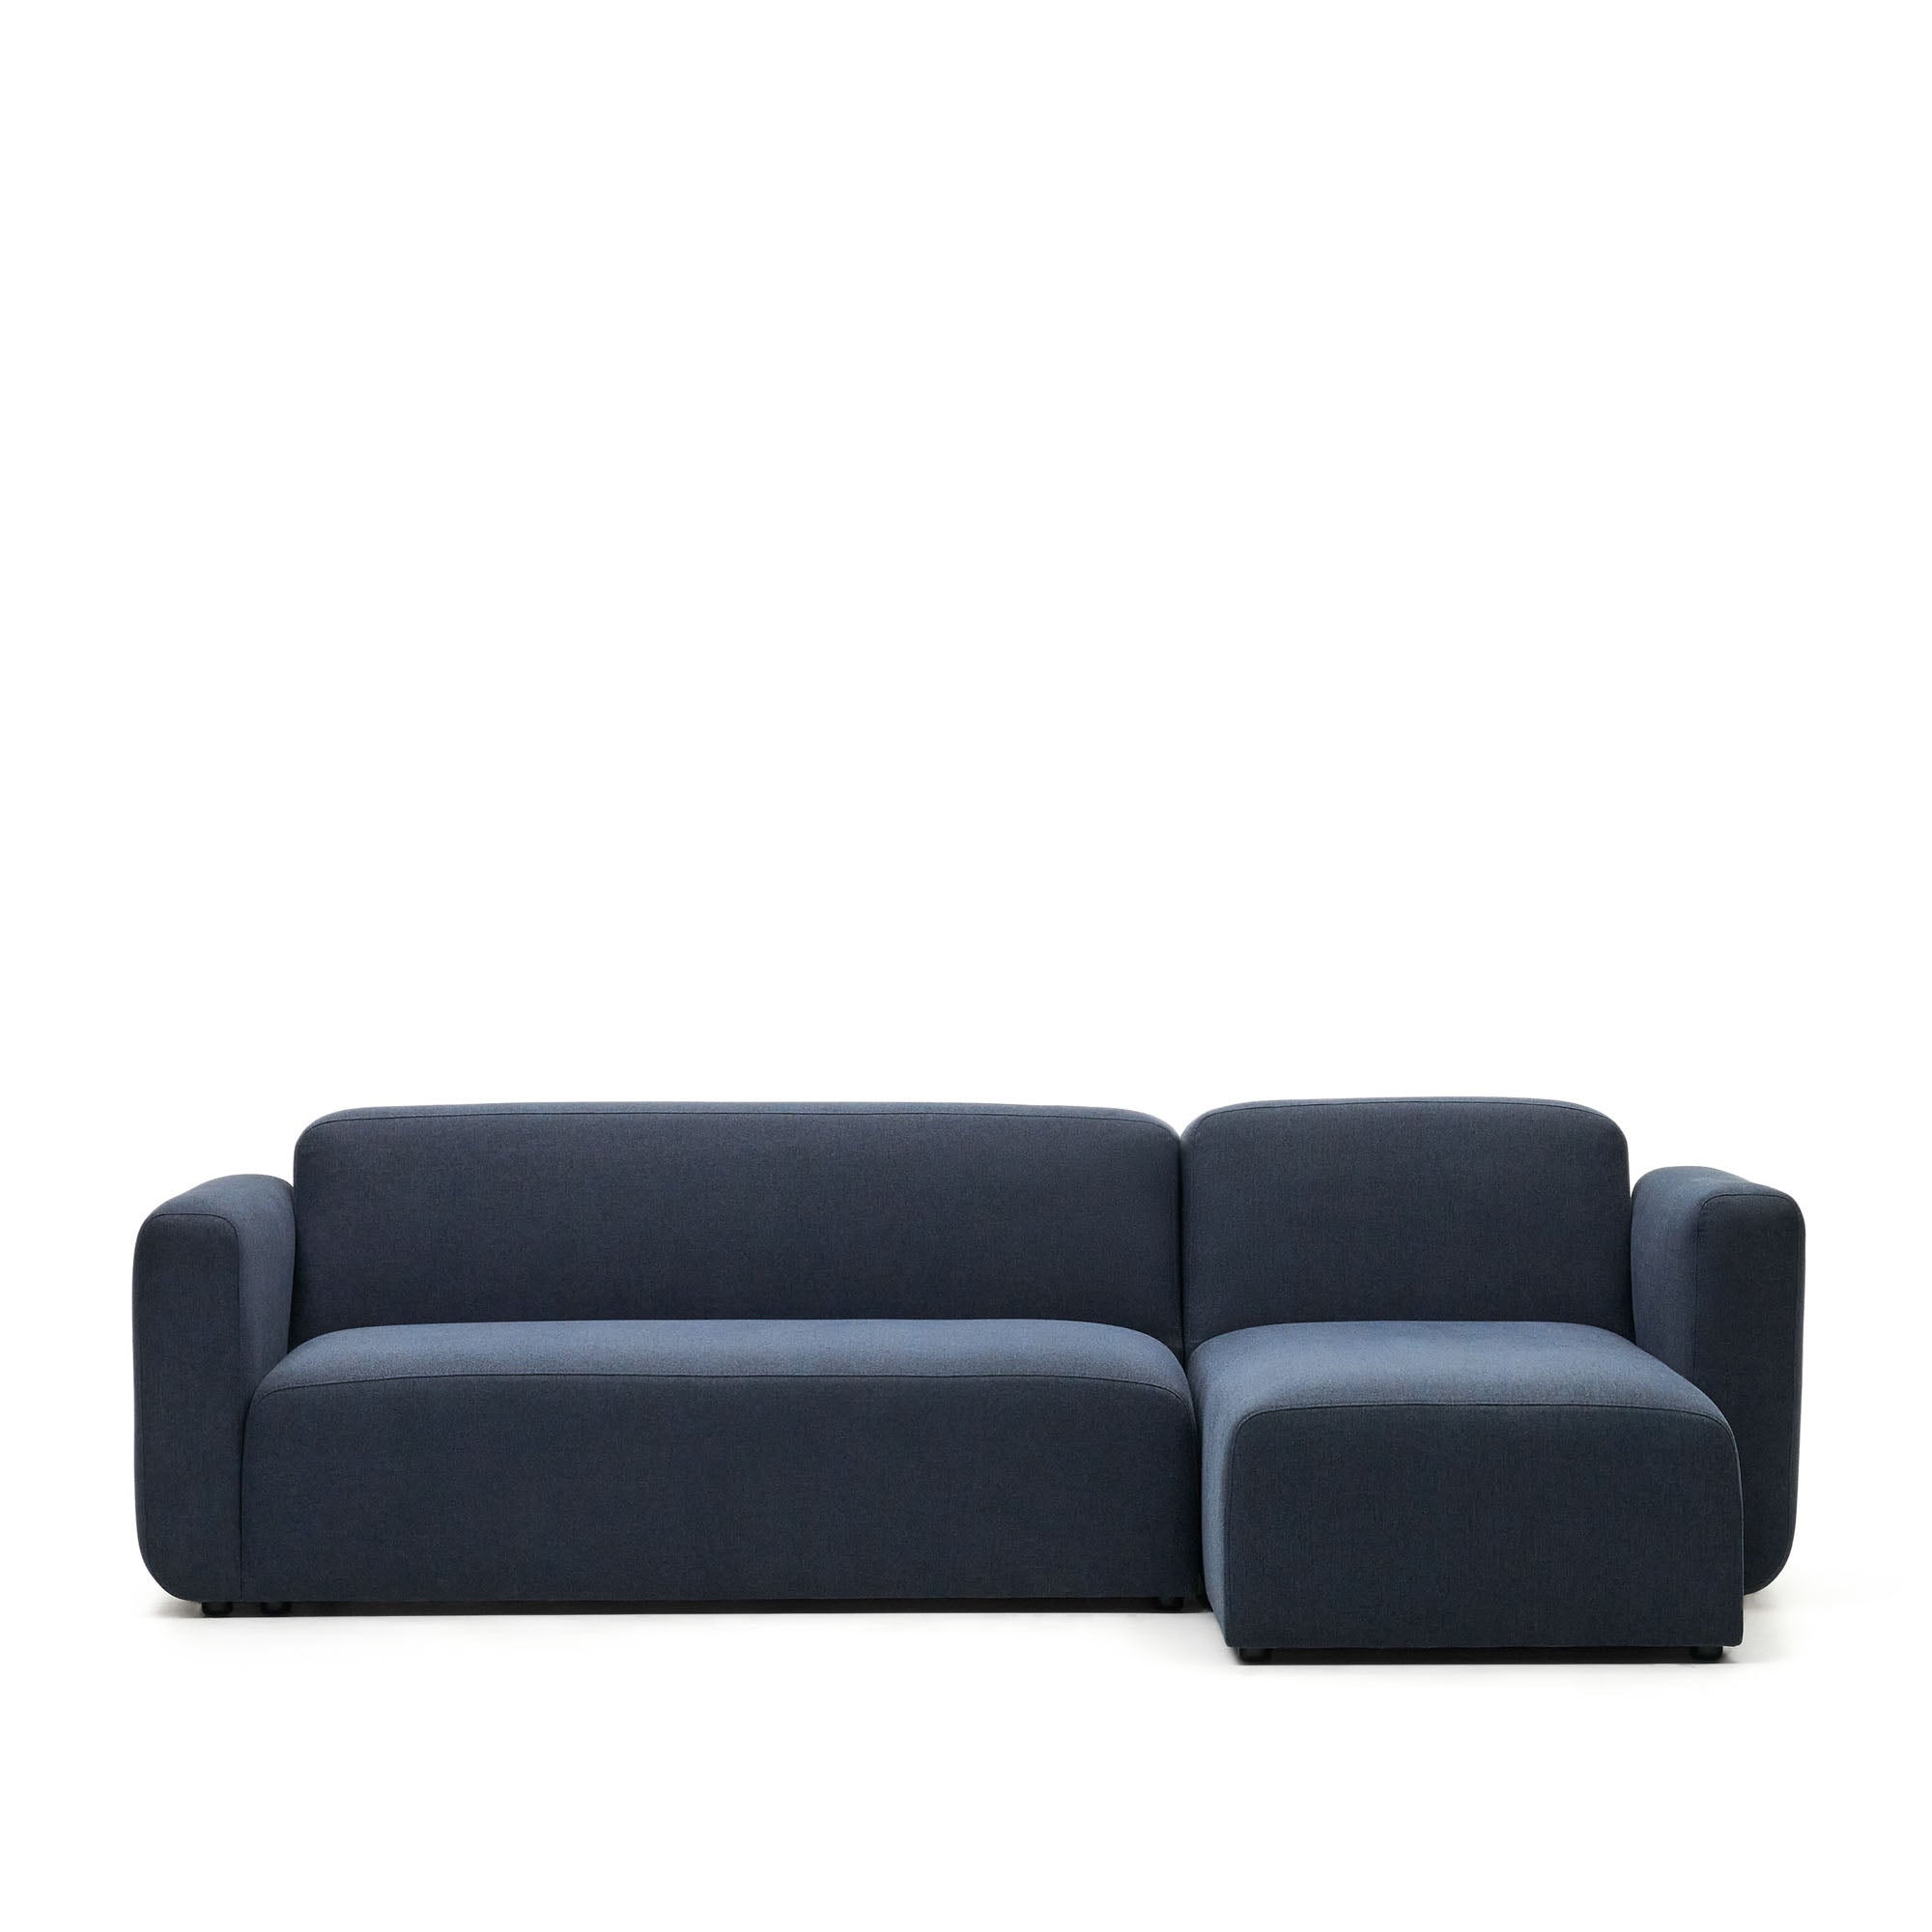 Neom 3 személyes moduláris kanapé, jobb/bal oldali fekvőgarnitúra, kék színben, 263 cm